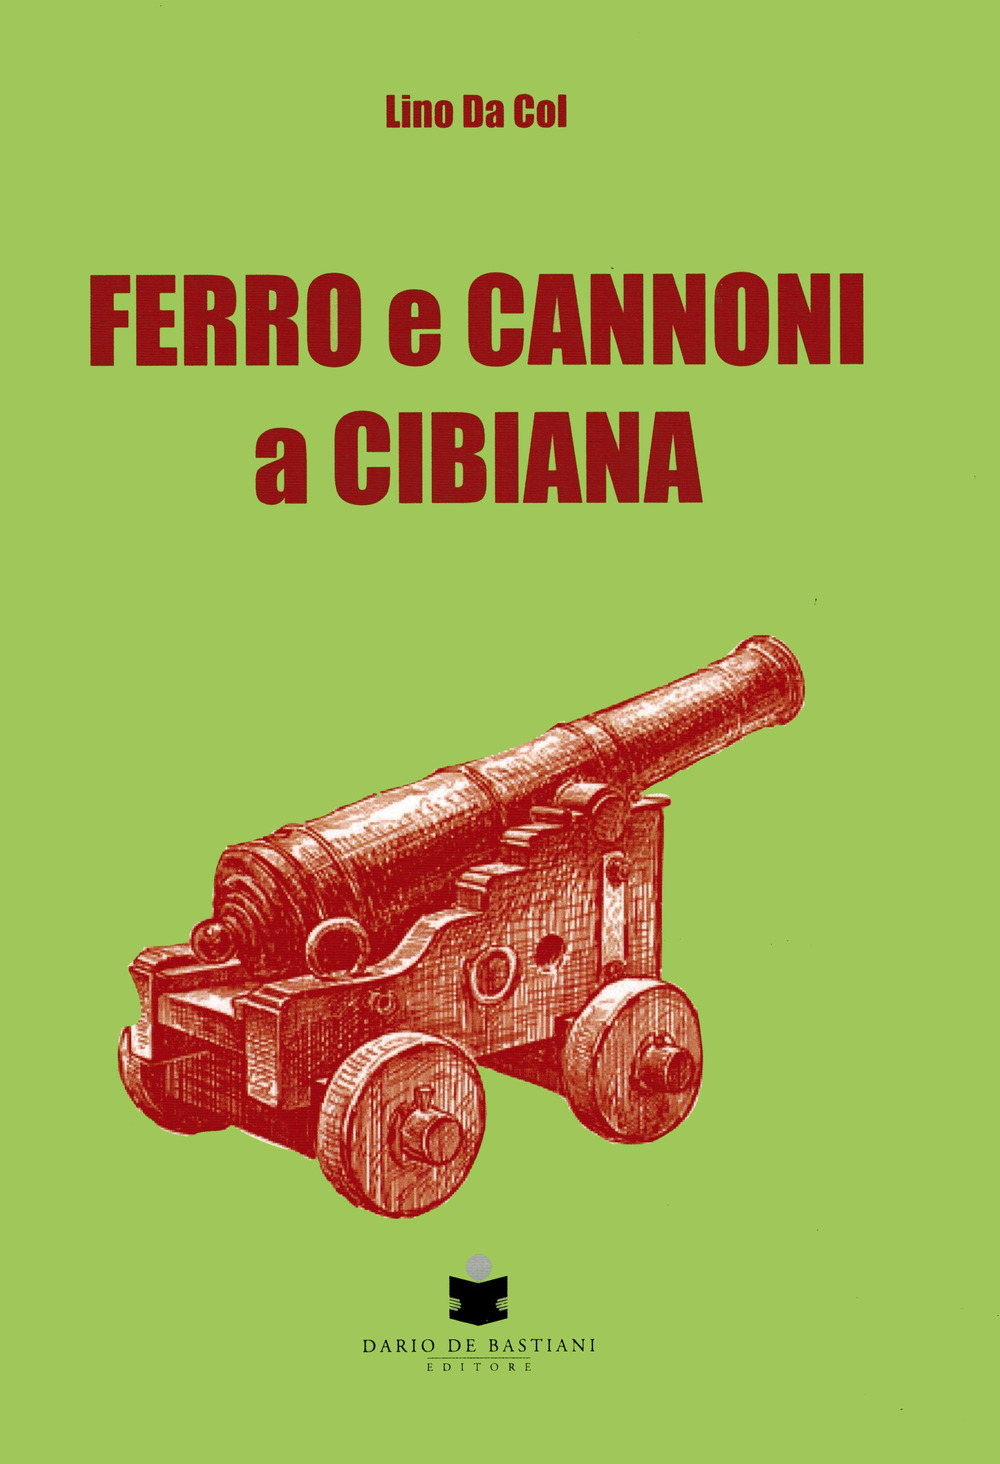 Libri Da Col Lino - Ferro E Cannoni A Cibiana NUOVO SIGILLATO, EDIZIONE DEL 22/06/2022 SUBITO DISPONIBILE